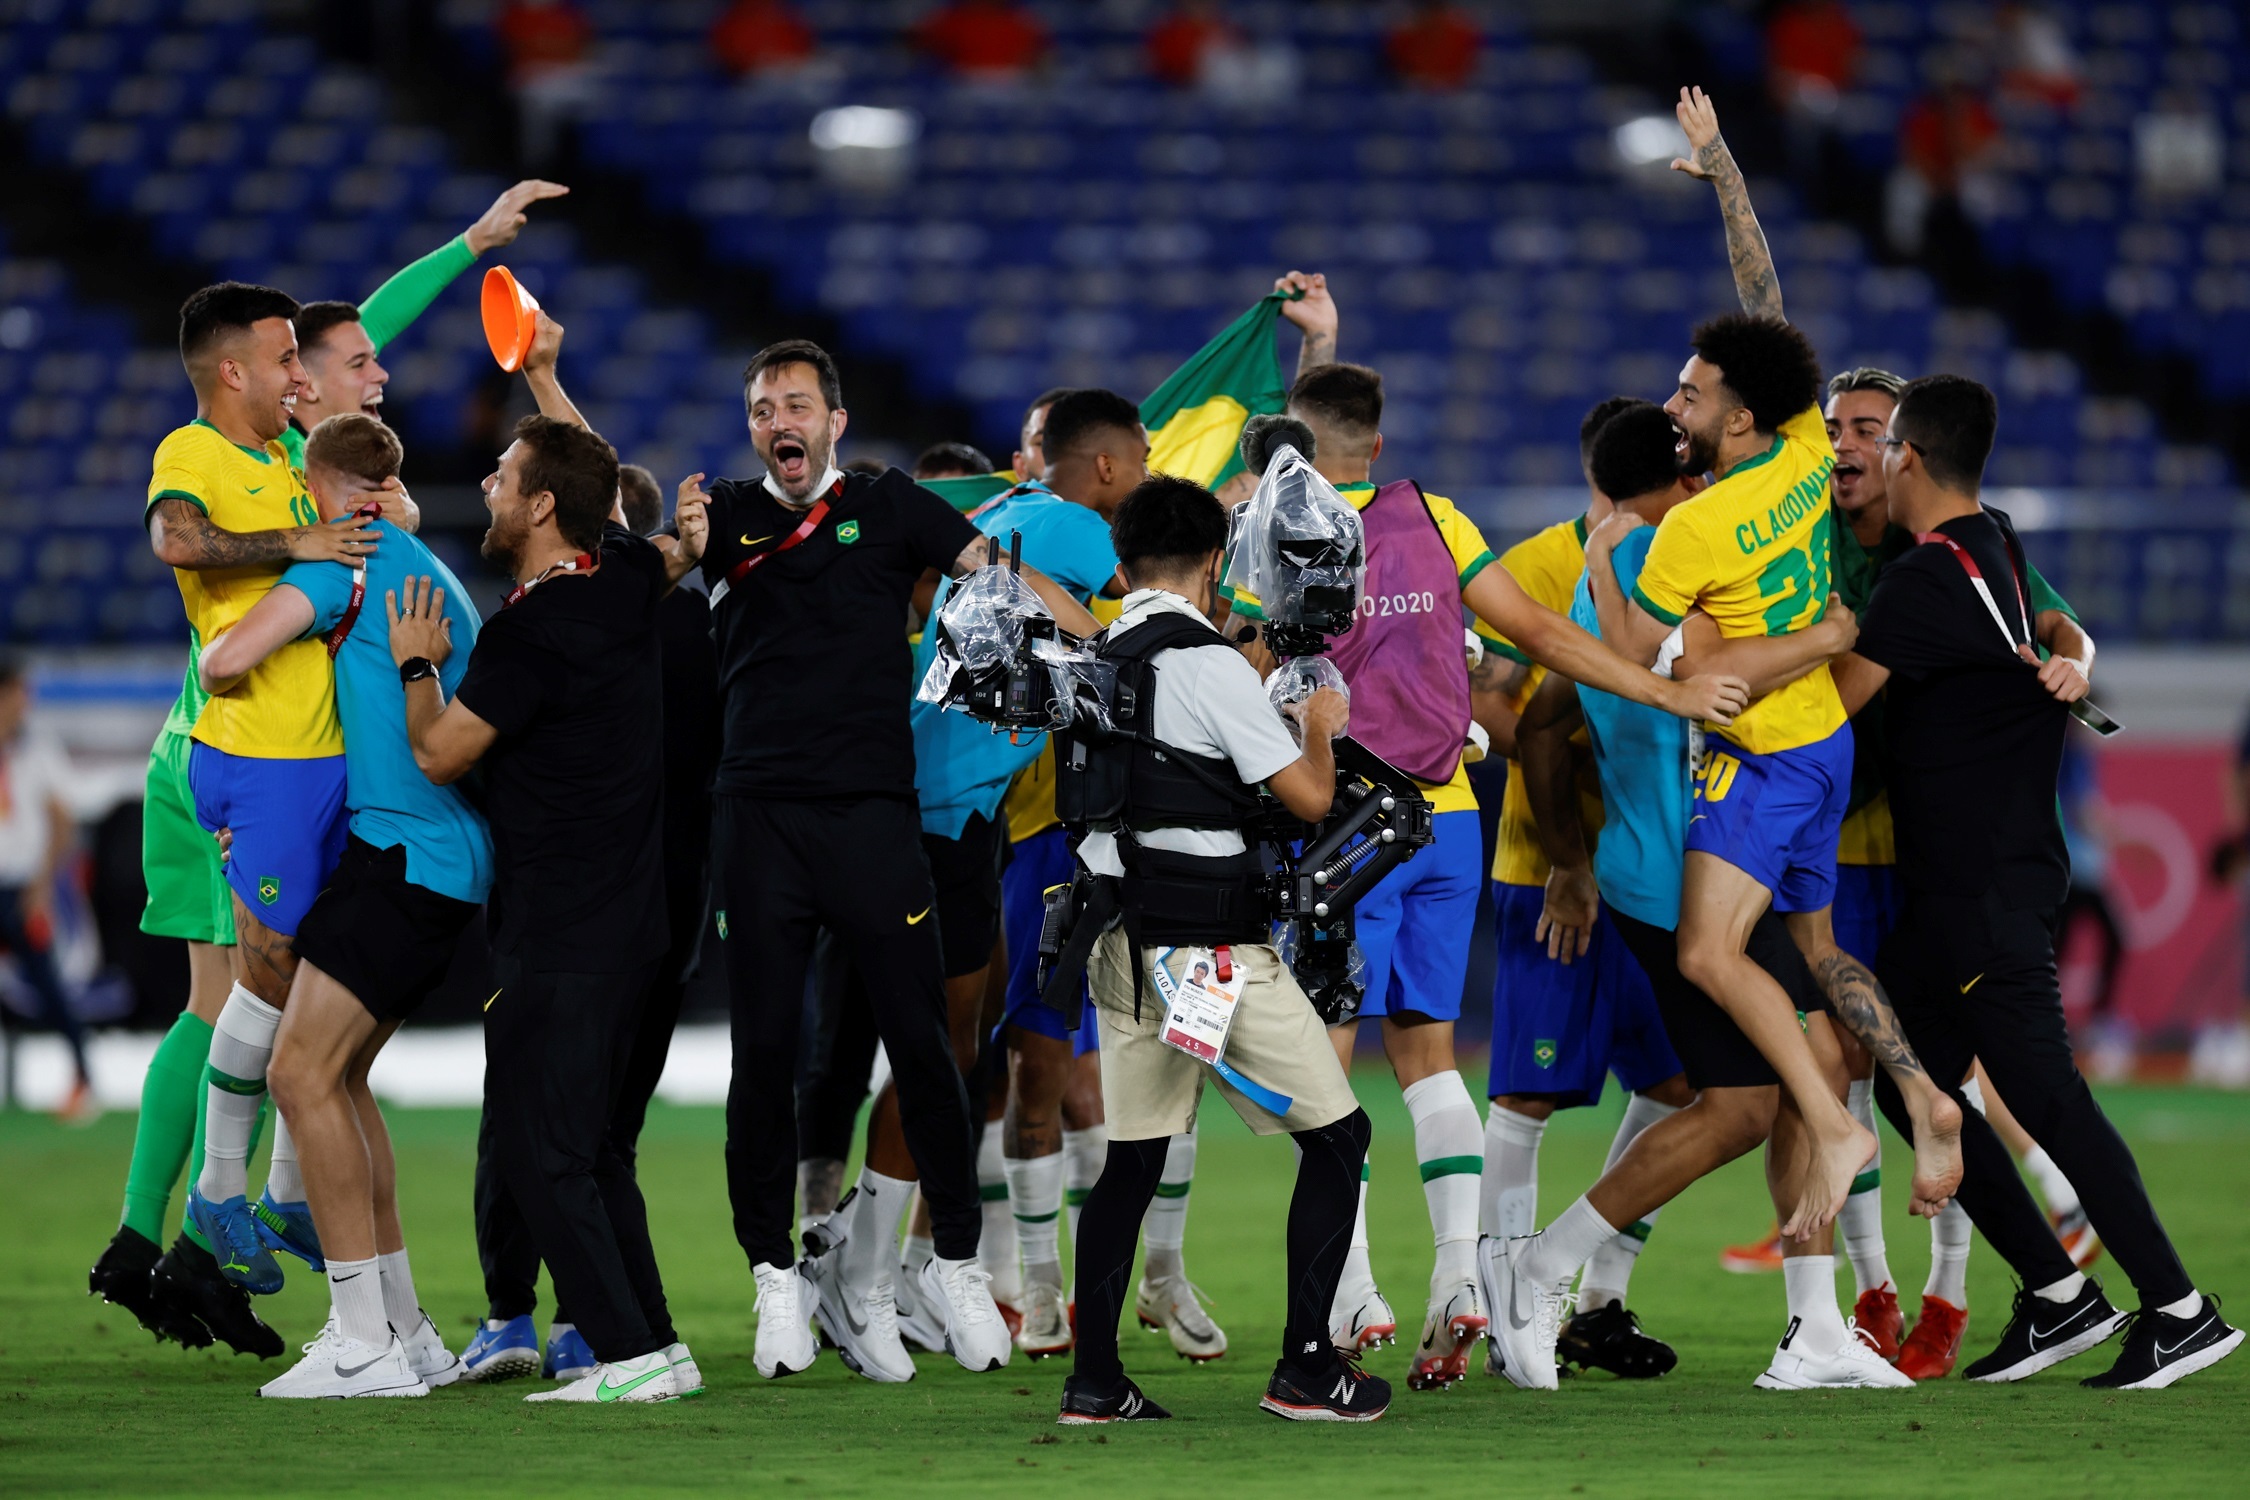 Los jugadores brasileños celebran tras vencer a España en la final de fútbol masculino de los Juegos Olímpicos 2020, este sábado en el Estadio Internacional de Yokohama. Prensa Libre (EFE)